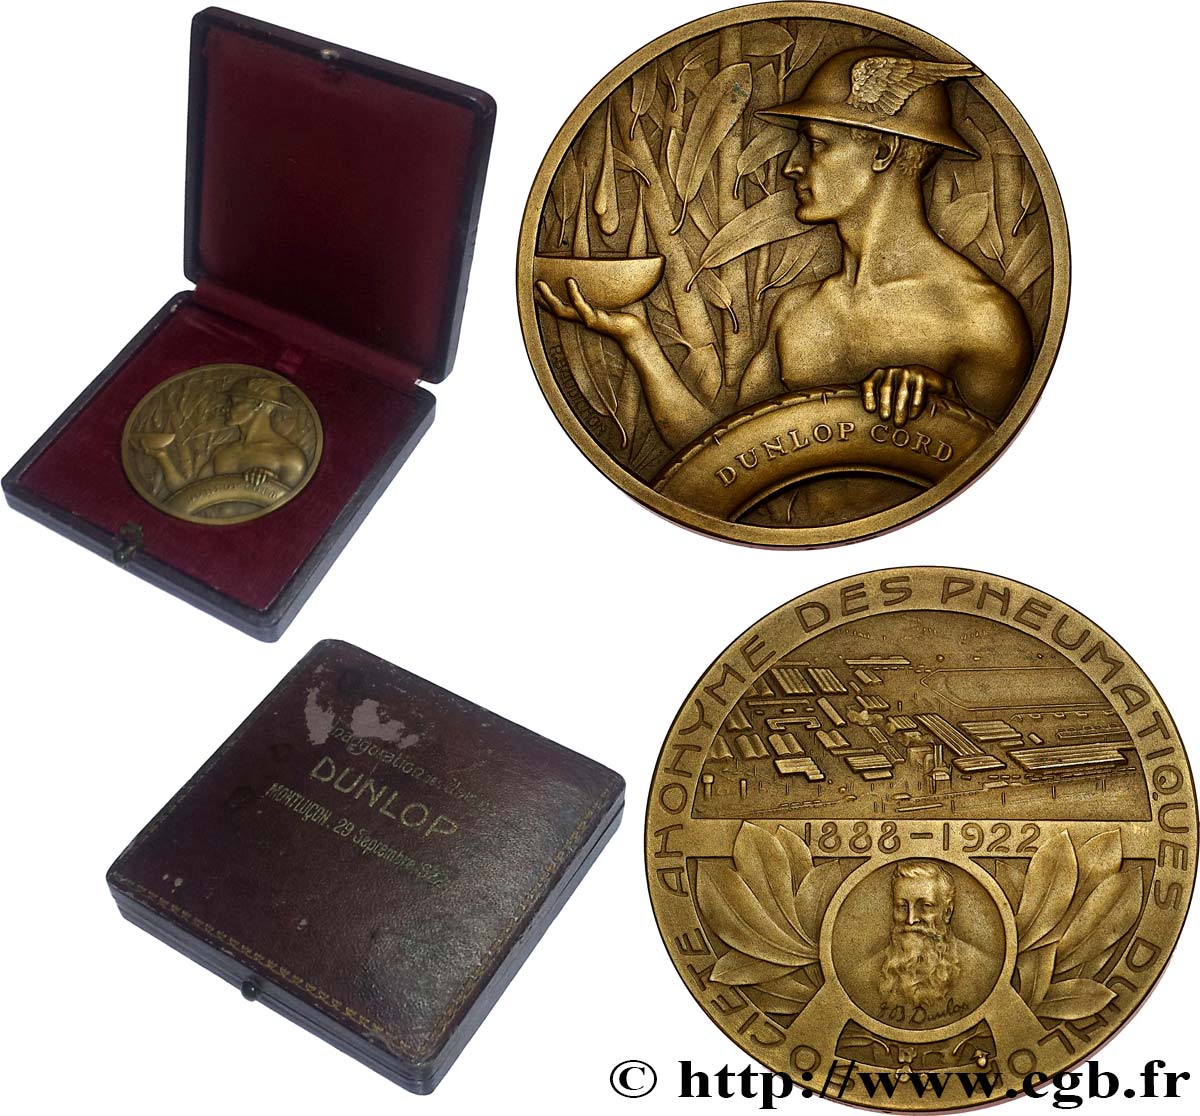 III REPUBLIC Médaille, John Boyd Dunlop, Société anonyme des pneumatiques, Inauguration des usines AU